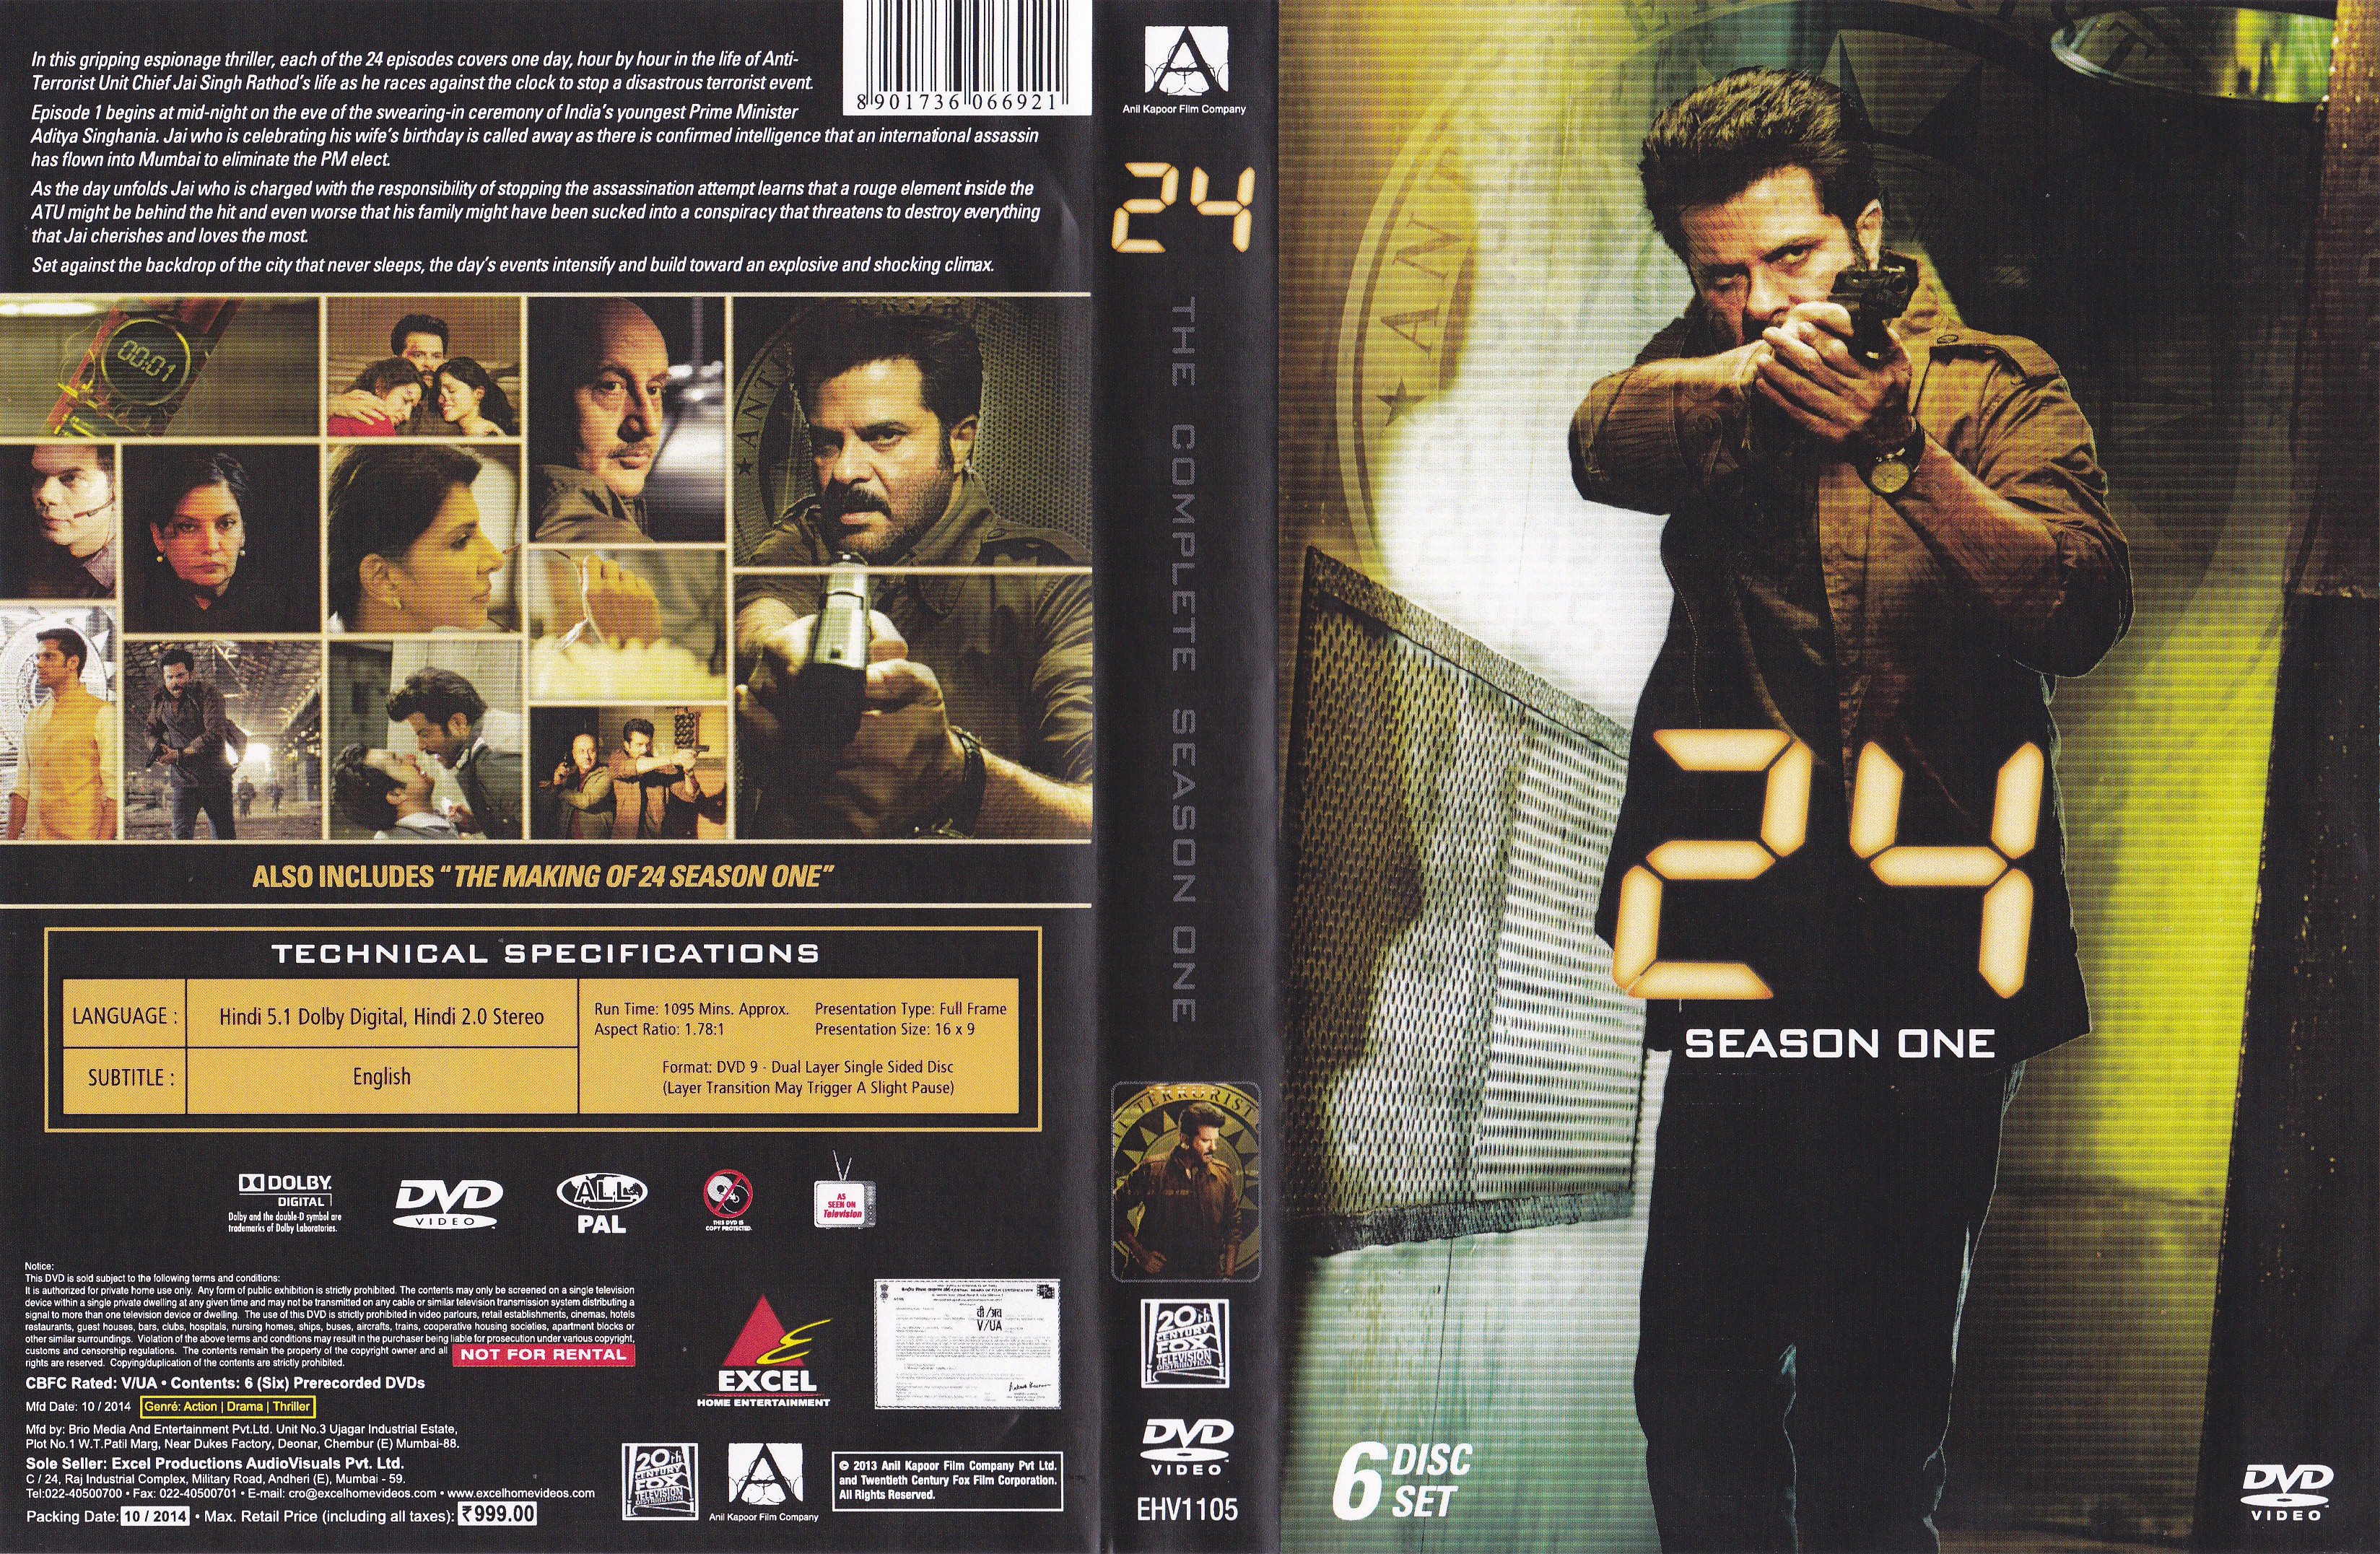 Jaquette DVD 24 Saison 1 (Version indienne)